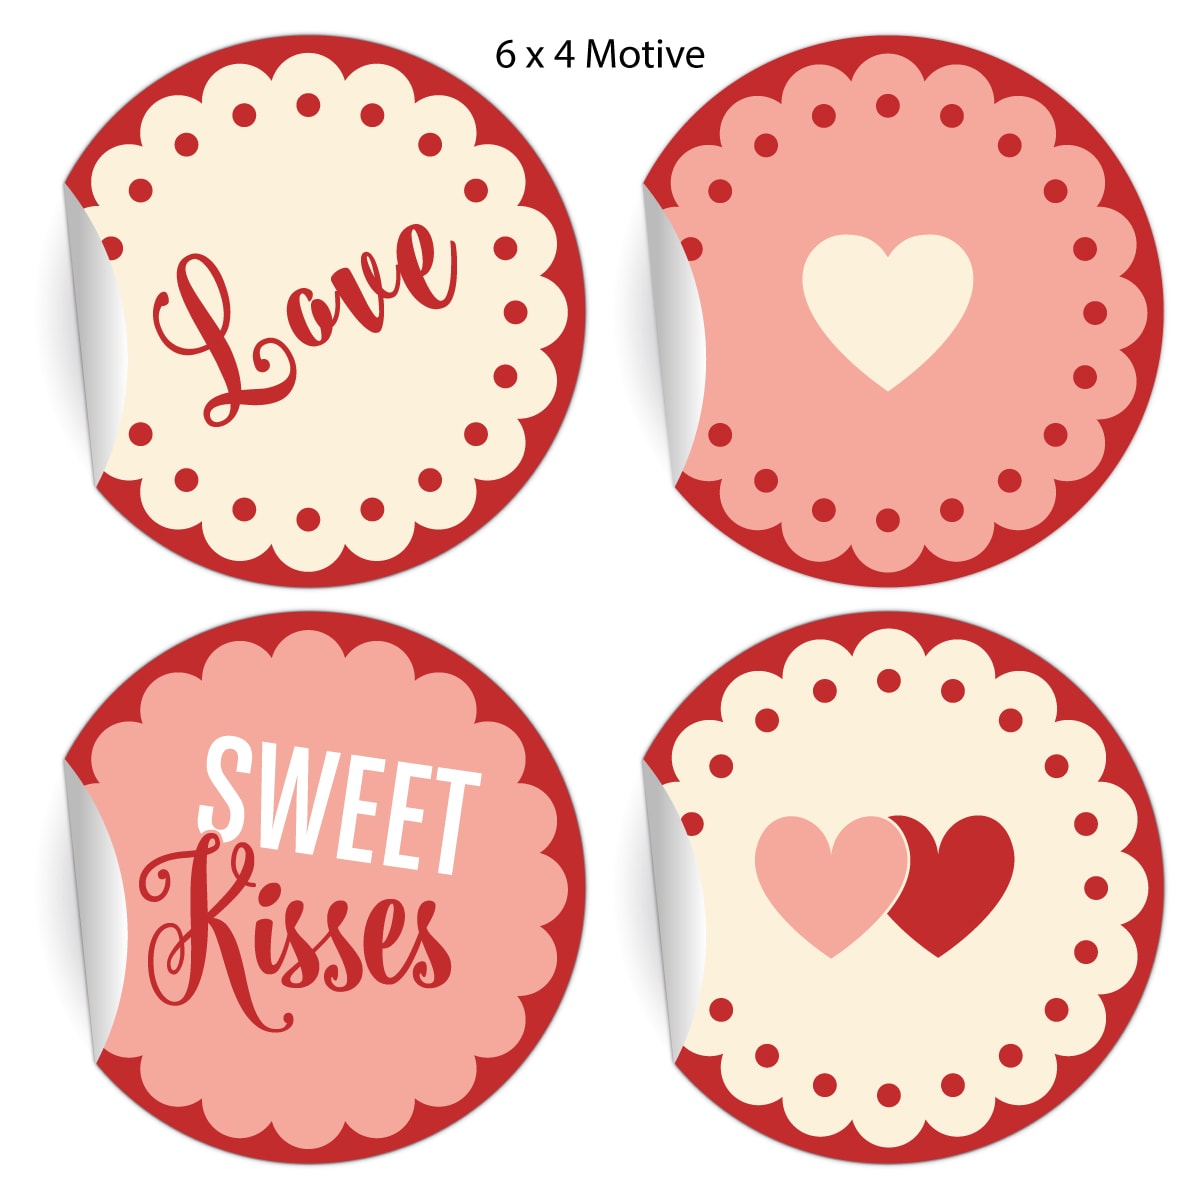 Kartenkaufrausch: 24 romantische Liebes Aufkleber aus unserer Liebes Papeterie in rosa